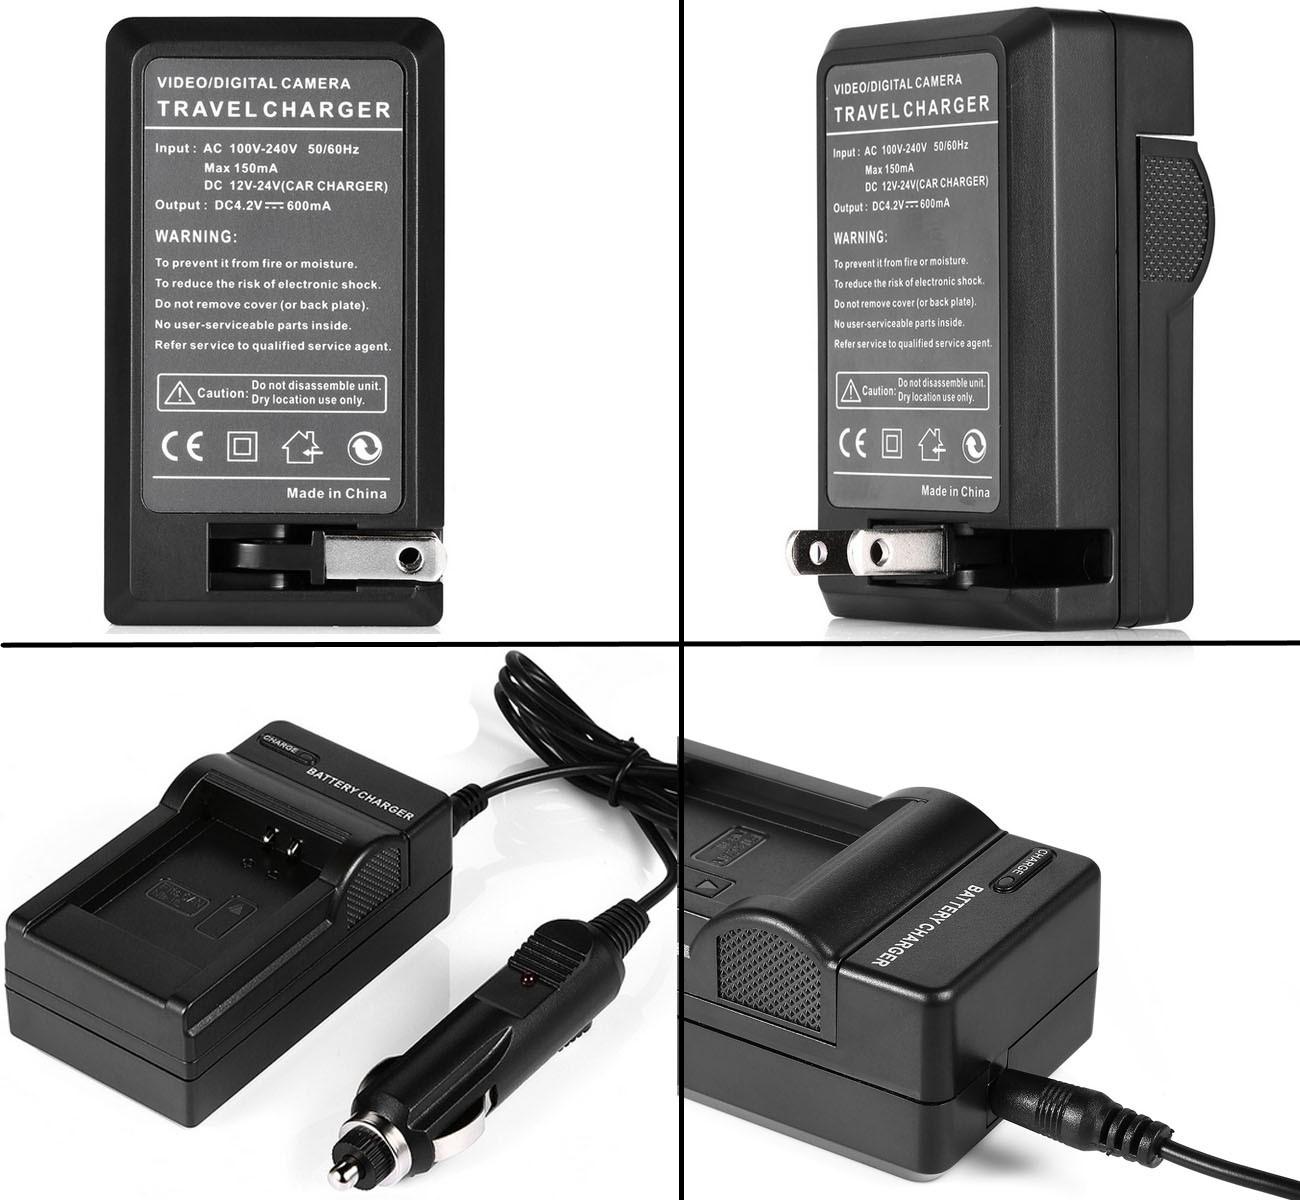 Изображение товара: Батарея + зарядное устройство для sony HDR-CX240E, HDR-CX240, HDR-CX405, HDR-CX440, HDR-CX470, HDR-GW66, GW66V, HDR-GWP88V Handycam видеокамеры